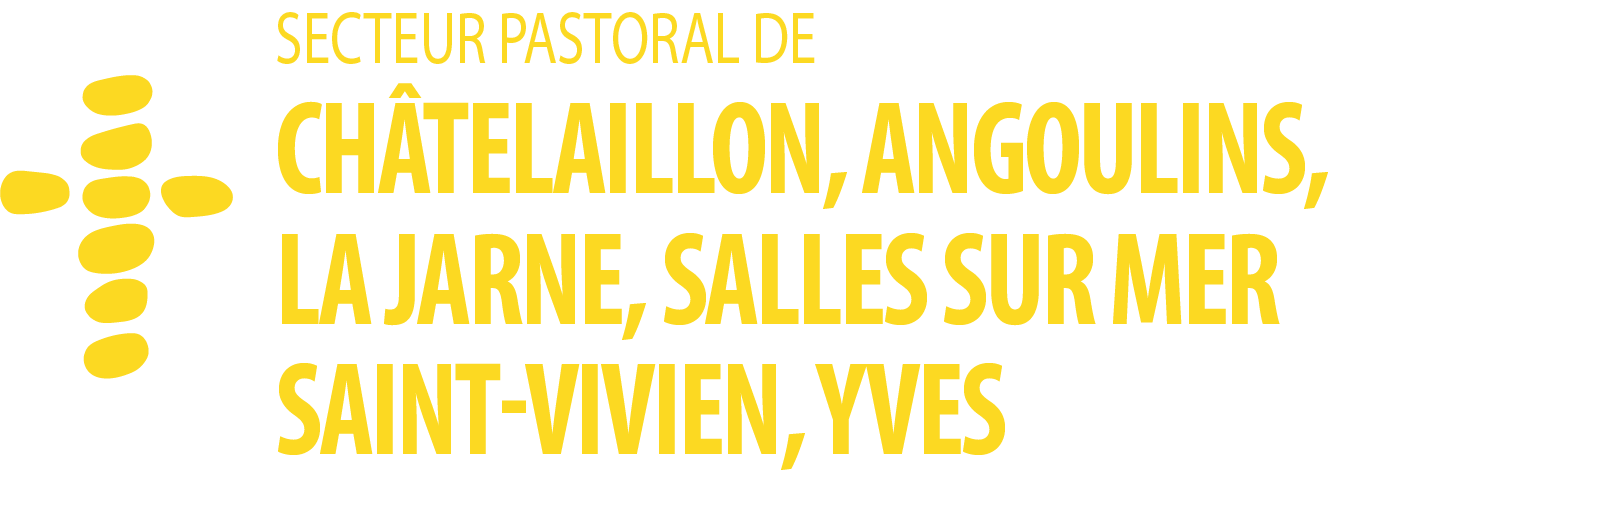 Secteur Paroissial de Châtelaillon, Angoulins, La Jarne, Salles sur Mer, Saint Vivien, Yves